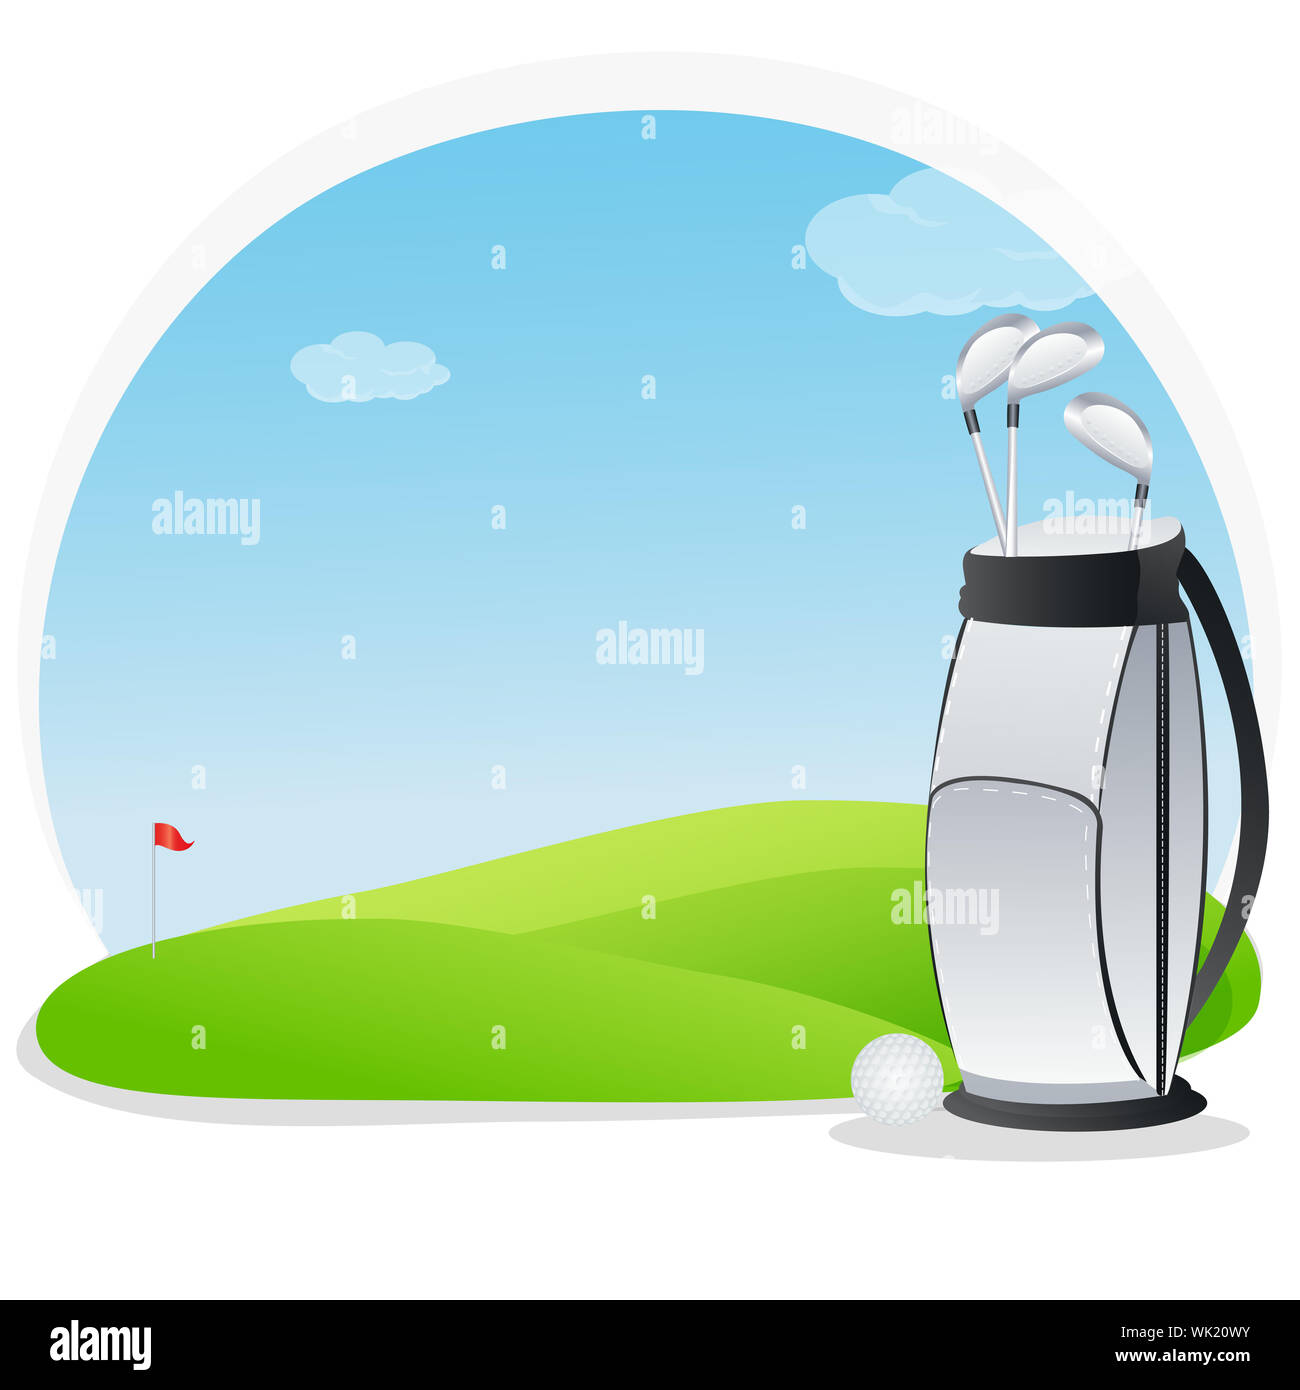 Ilustración del juego de golf en el campo de golf Foto de stock